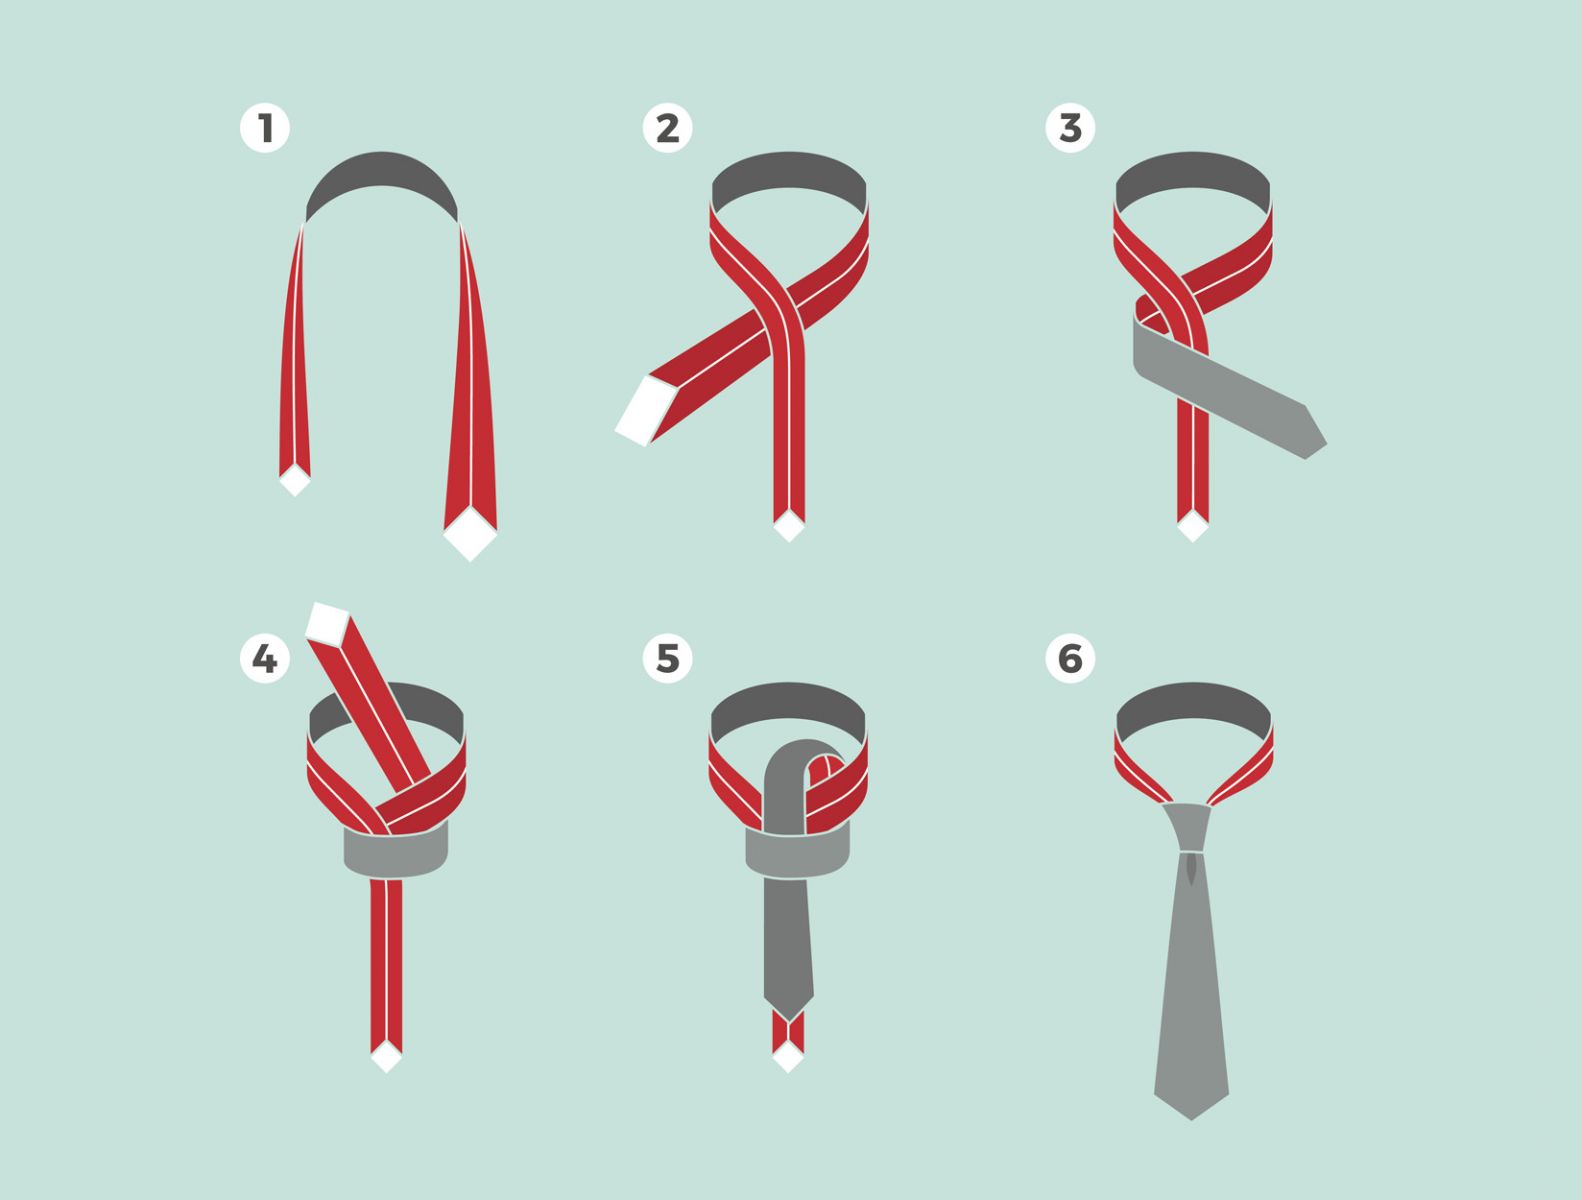 Завязываем галстук правильно: пошаговая инструкция с фото